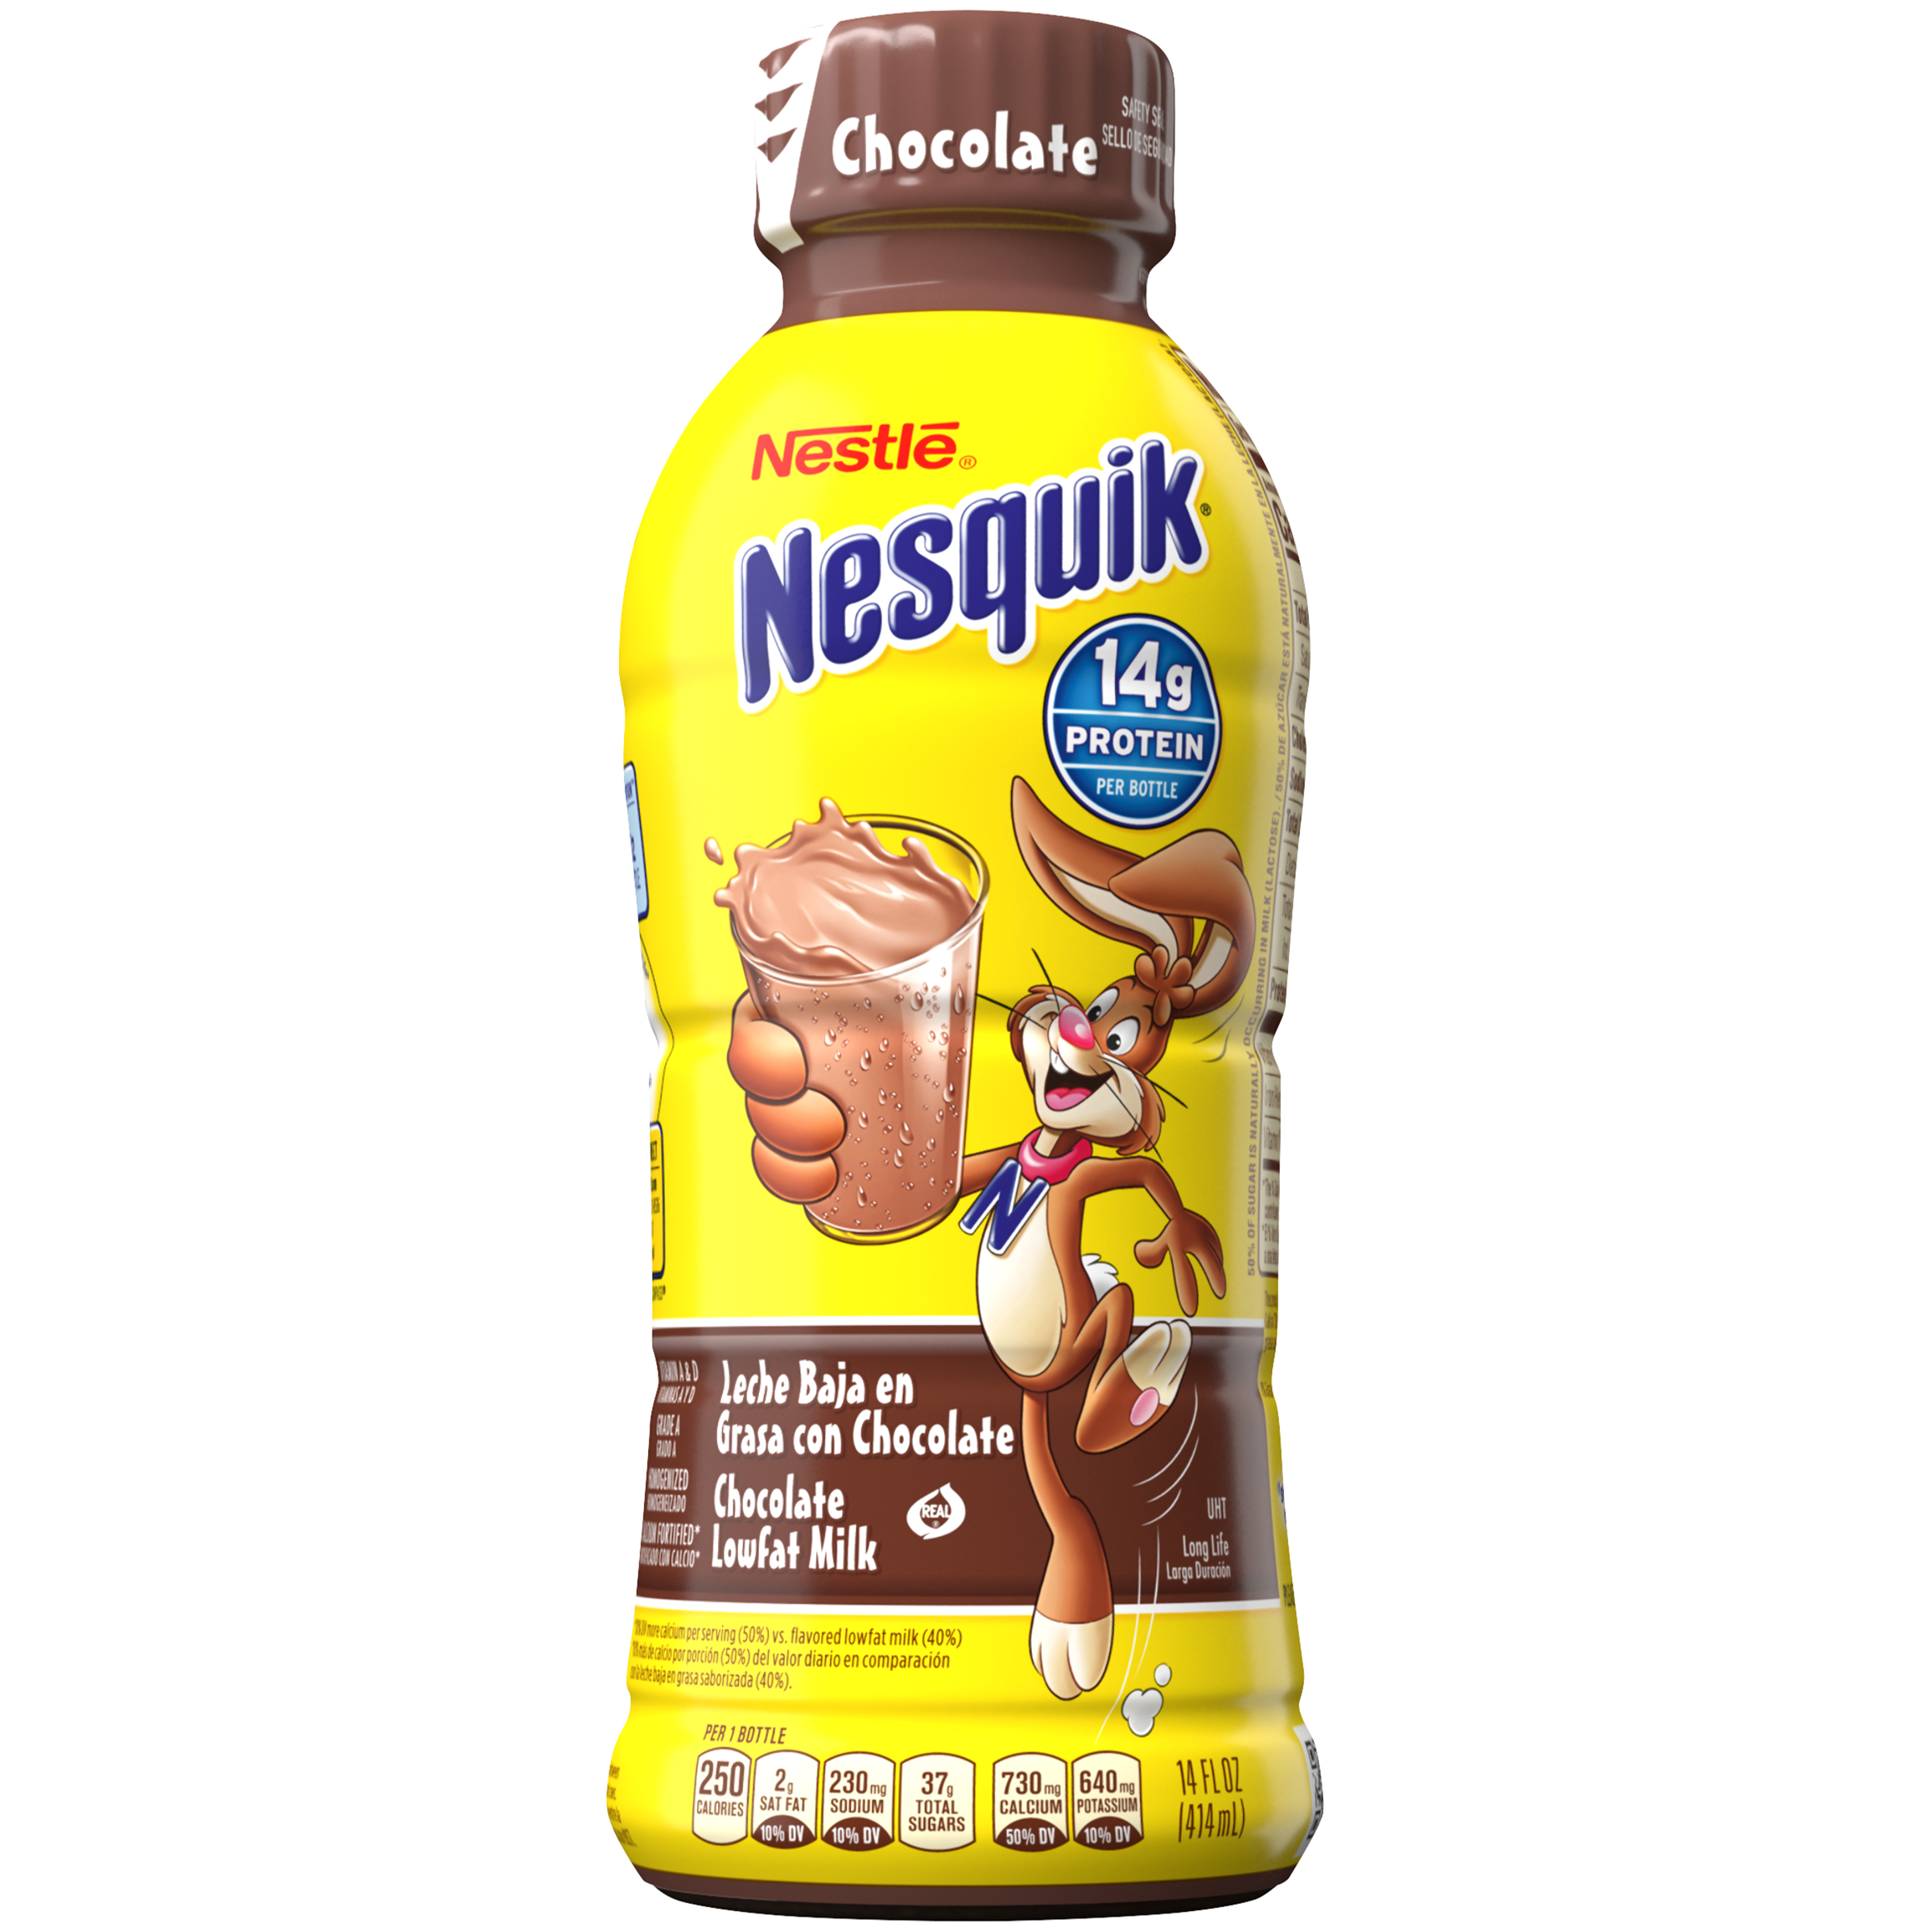 Кролик несквик редизайн. Nestle Несквик шоколад. Nesquik шоколадное молоко. Nesquik молочный шоколад молоко. Молочный коктейль Nesquik шоколадный.